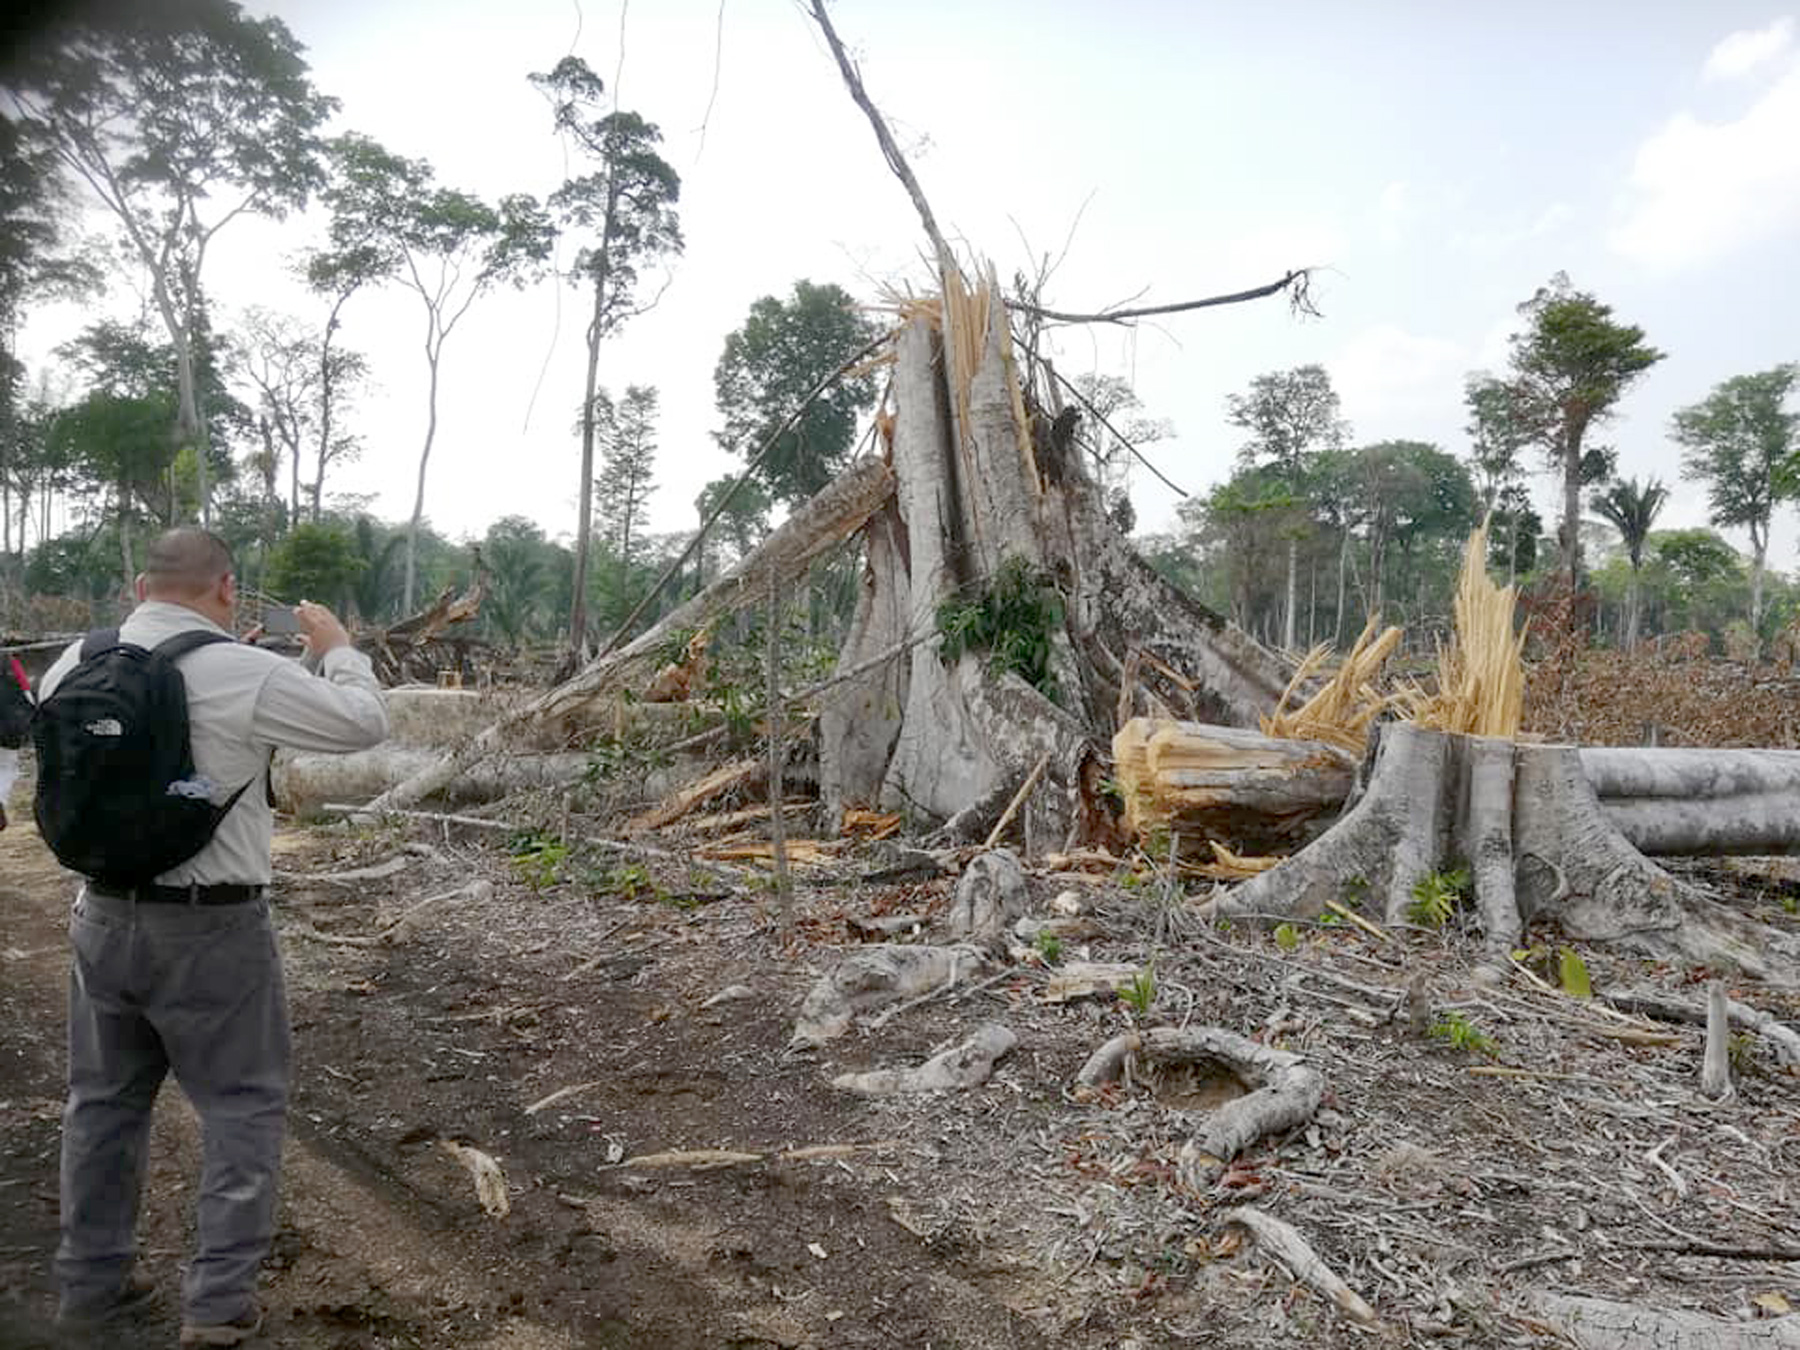 El sitio arqueológico Dos Pilas en Sayaxché, Petén, se encuentra en riesgo ante la tala ilegal, incendios forestales y el avance de la frontera agrícola. (Foto Prensa Libre: Dony Stewart)